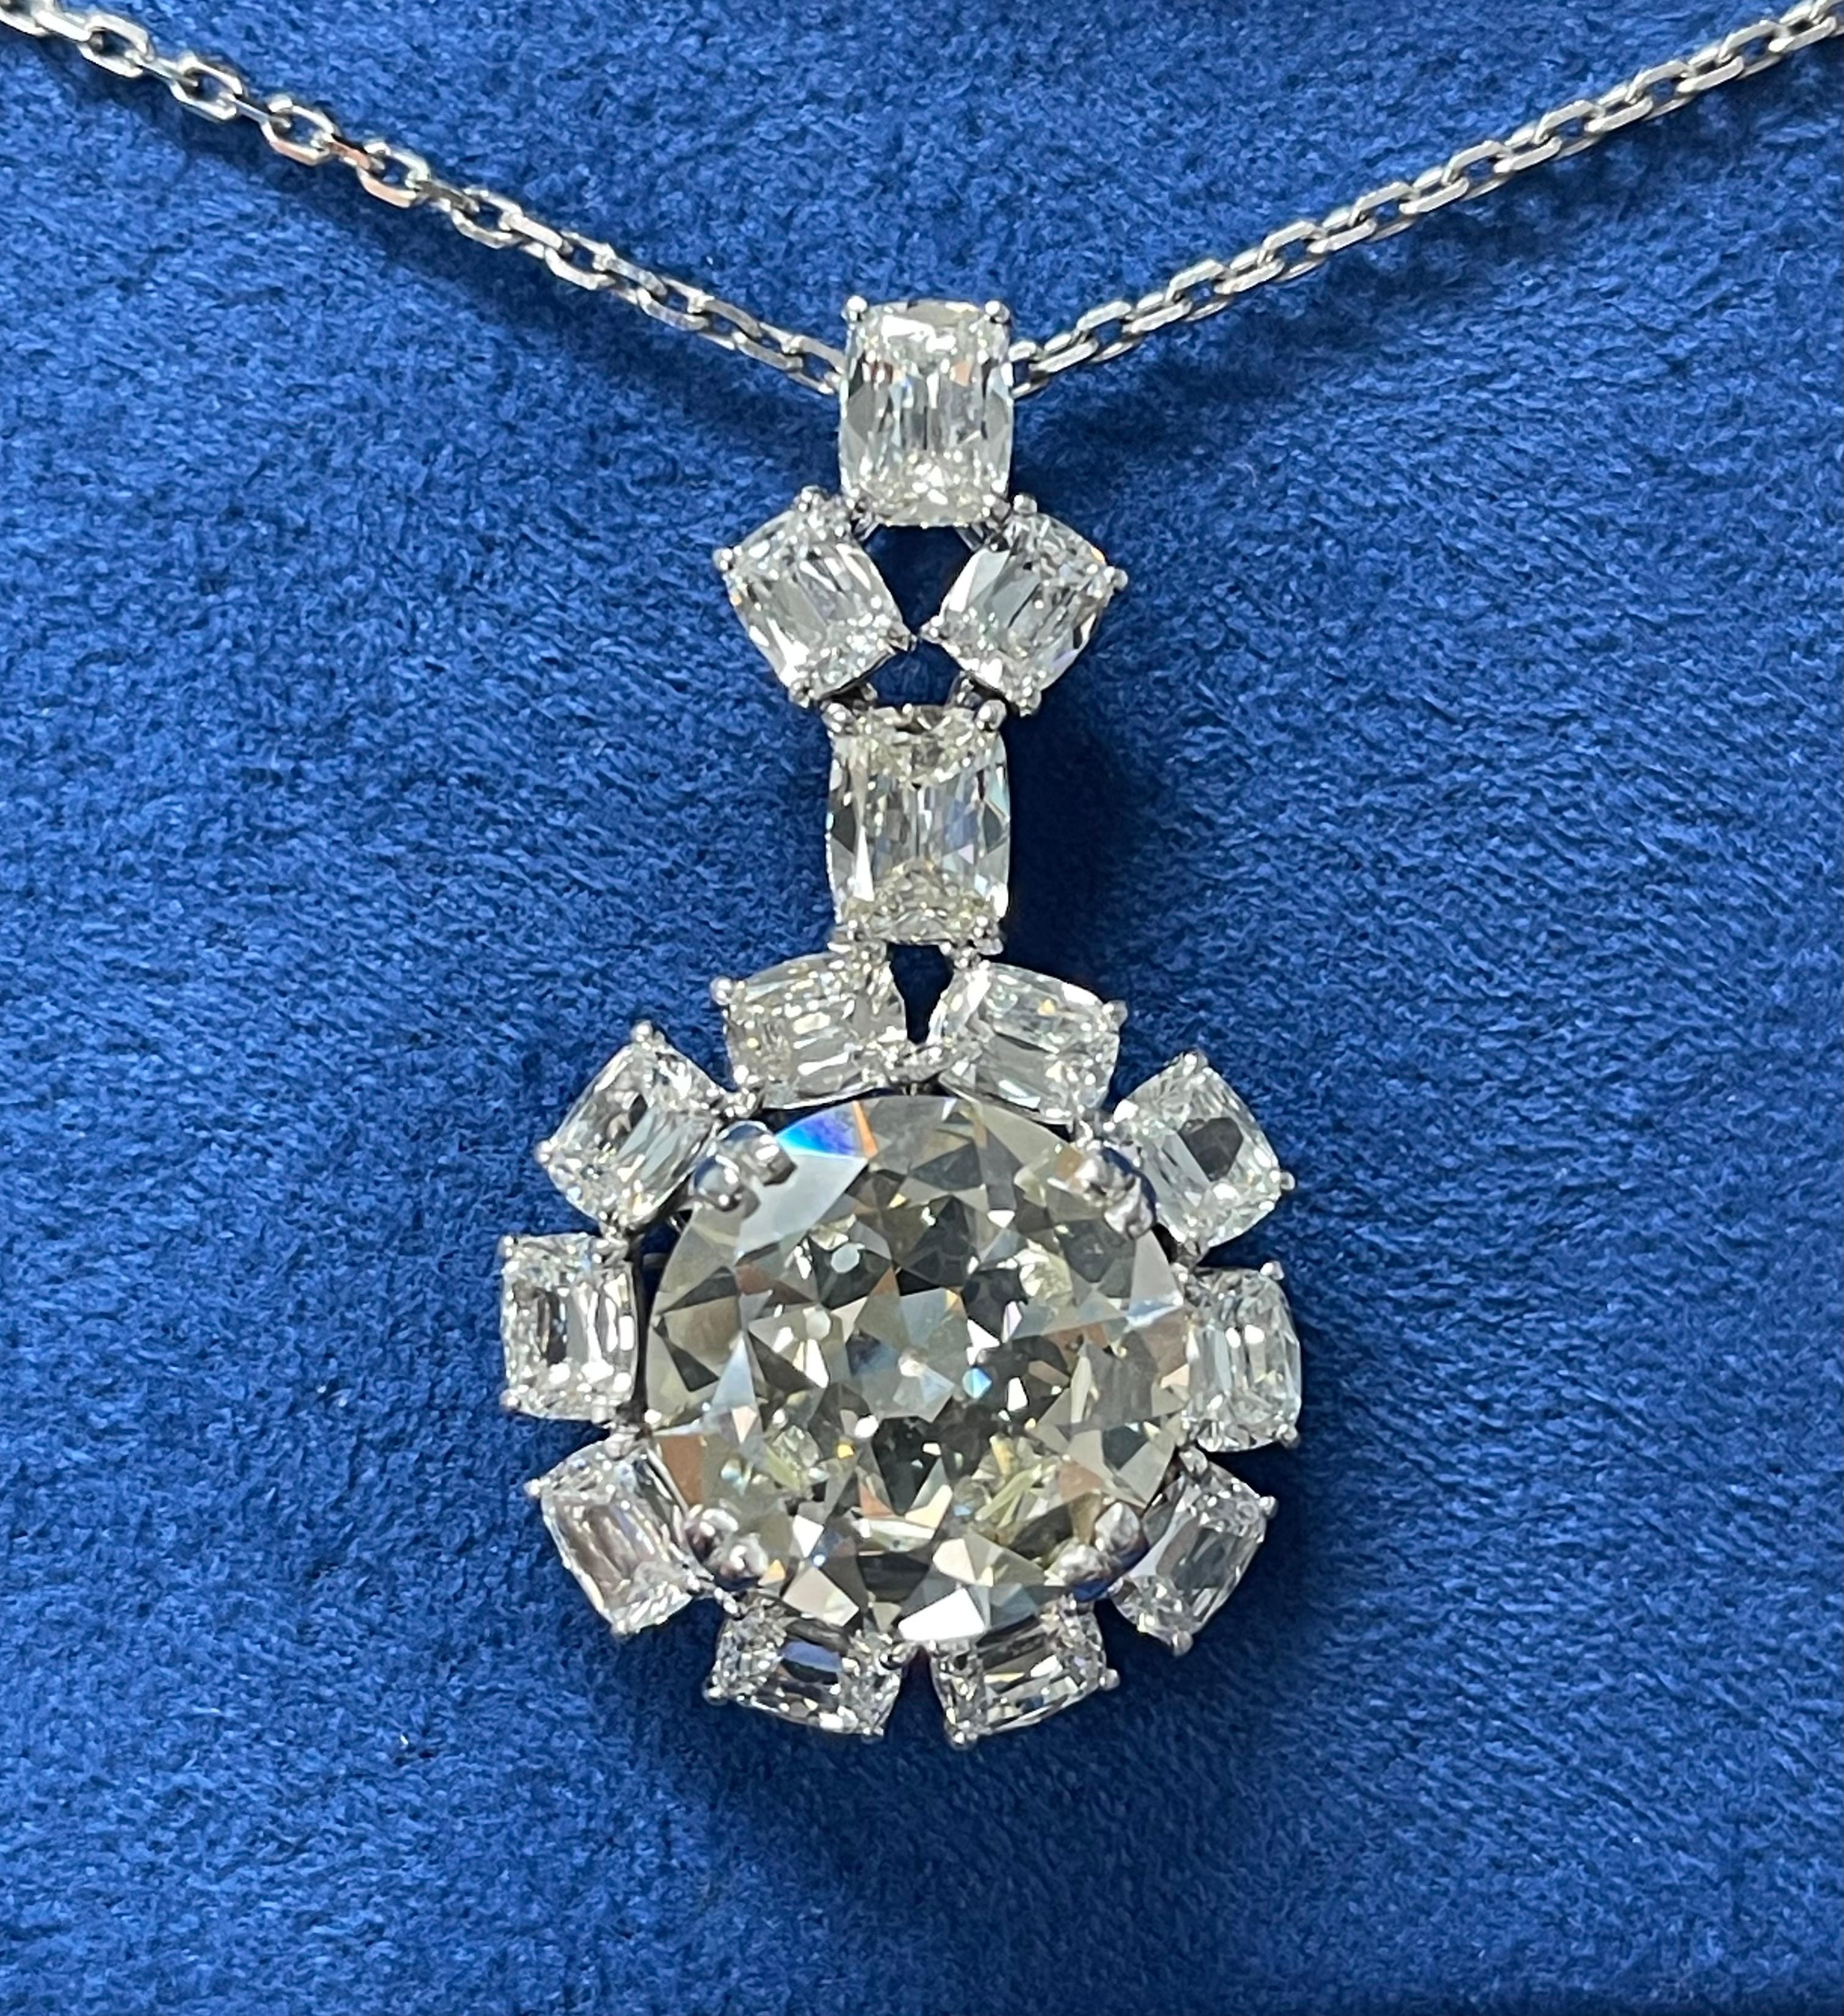 Eine seltene und unvergleichliche  Schönheit. Diese Halskette wurde mit atemberaubender Eleganz und Präzision entworfen und handgefertigt, um die einzigartige Schönheit des zentralen 10-Karat-Diamanten im Altminenschliff zu würdigen. 

Die Details